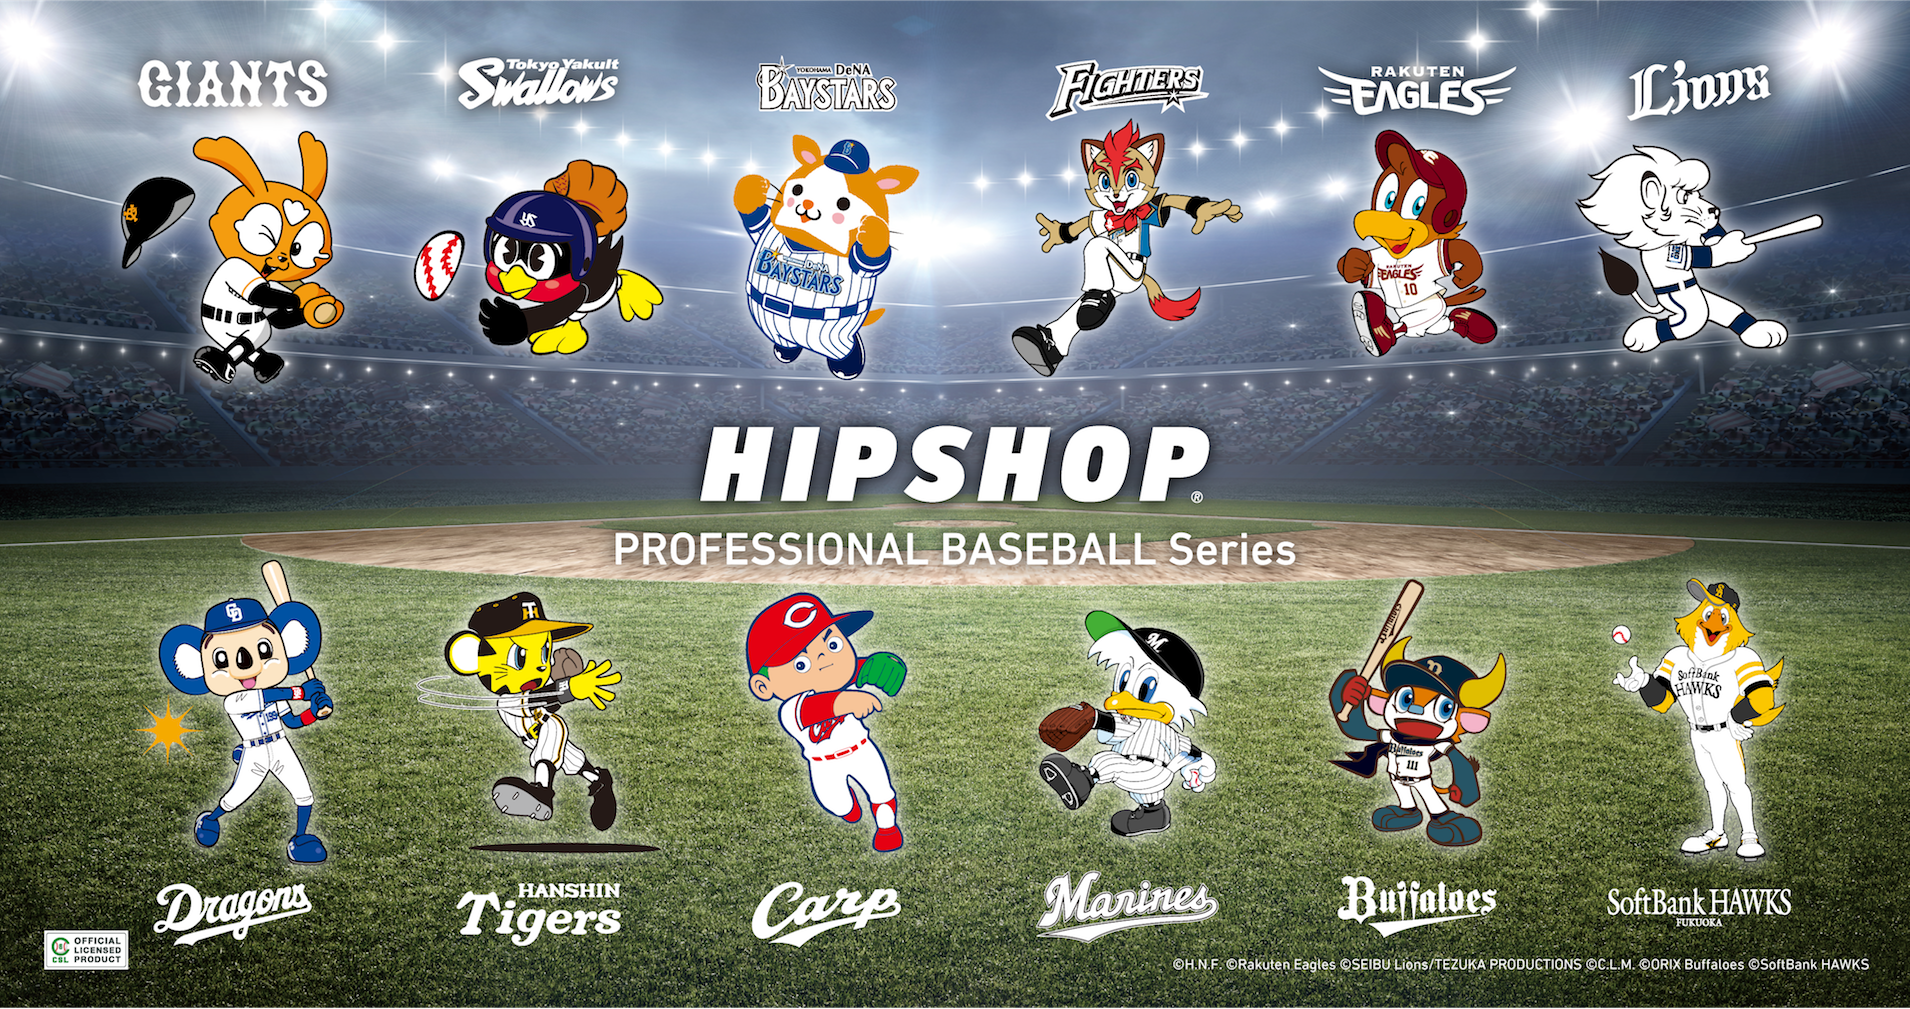 球春到来 21年プロ野球開幕 アンダーウェアブランド Hipshop ヒップショップ がプロ野球球団 とコラボレーション 株式会社プロビジョンのプレスリリース